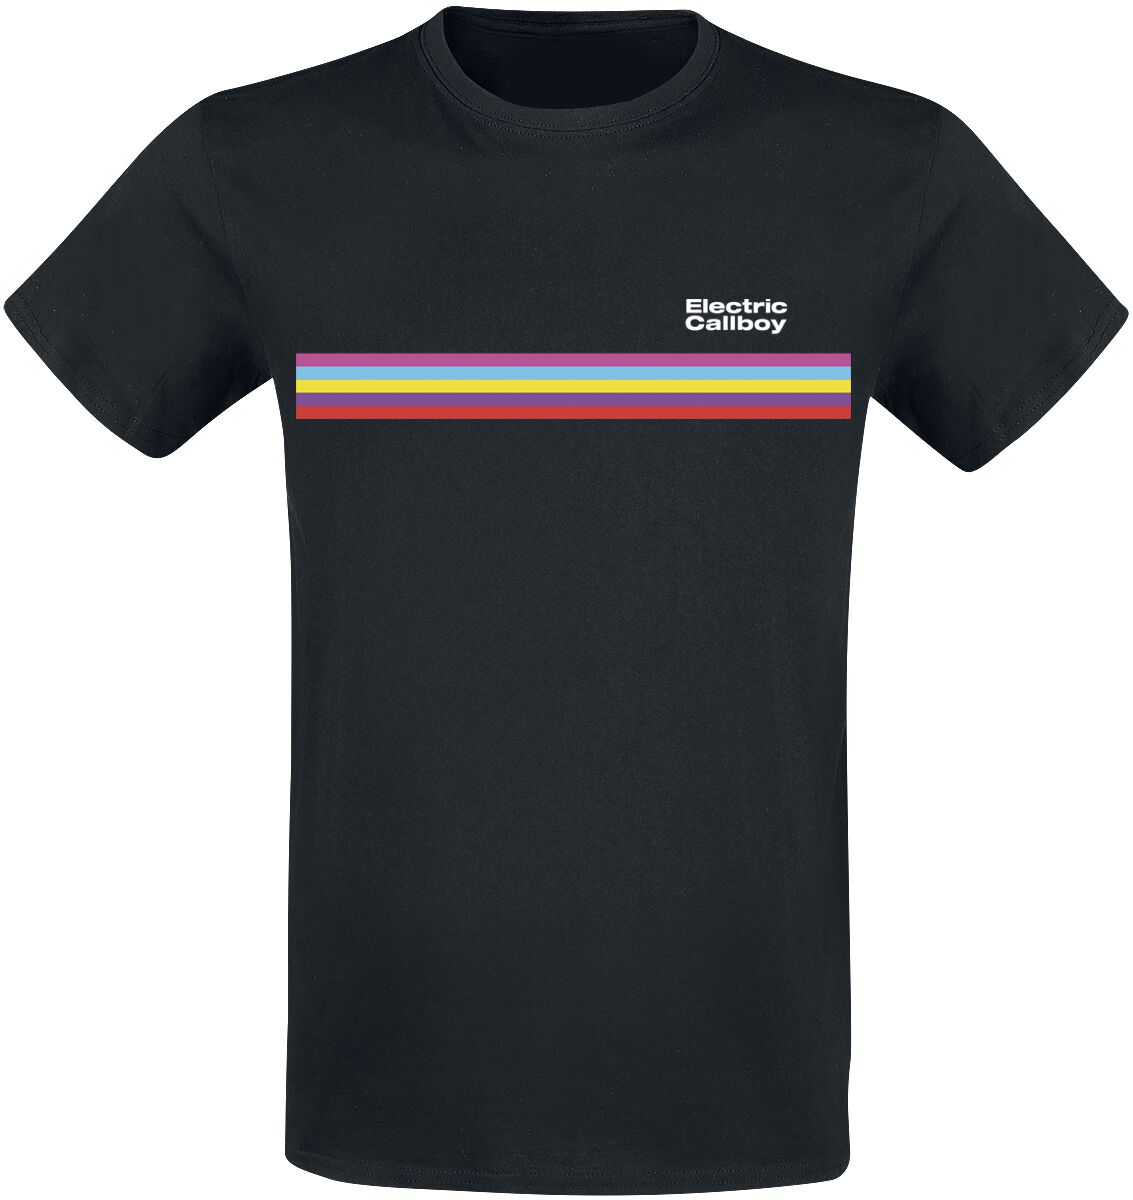 Electric Callboy T-Shirt - Stripe - S bis 3XL - für Männer - Größe 3XL - schwarz  - Lizenziertes Merchandise!